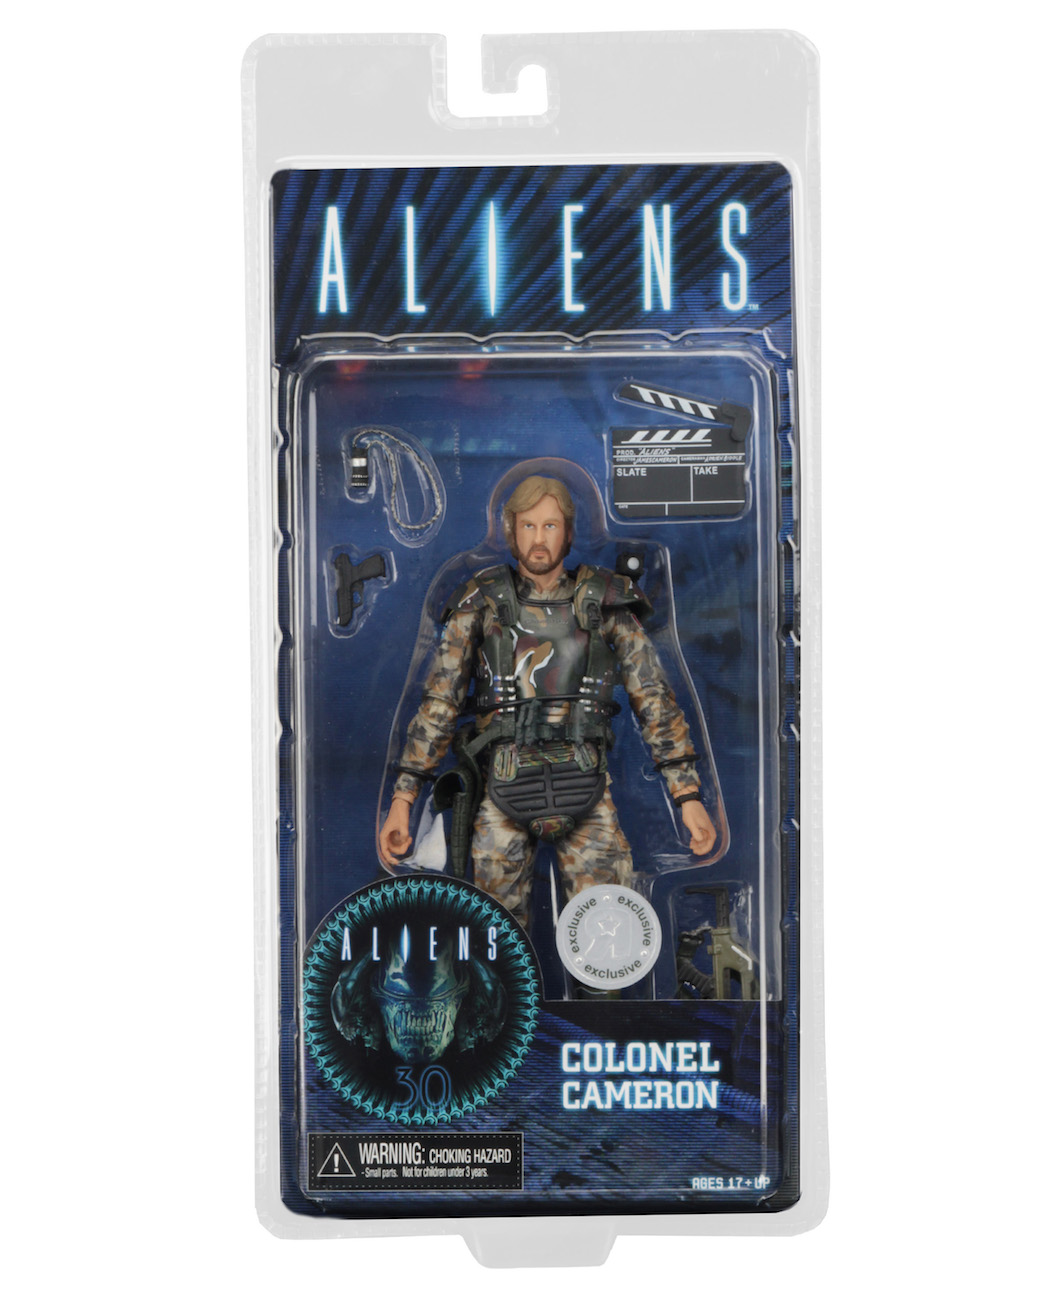 Aliens Col. James Cameron Action Figure 